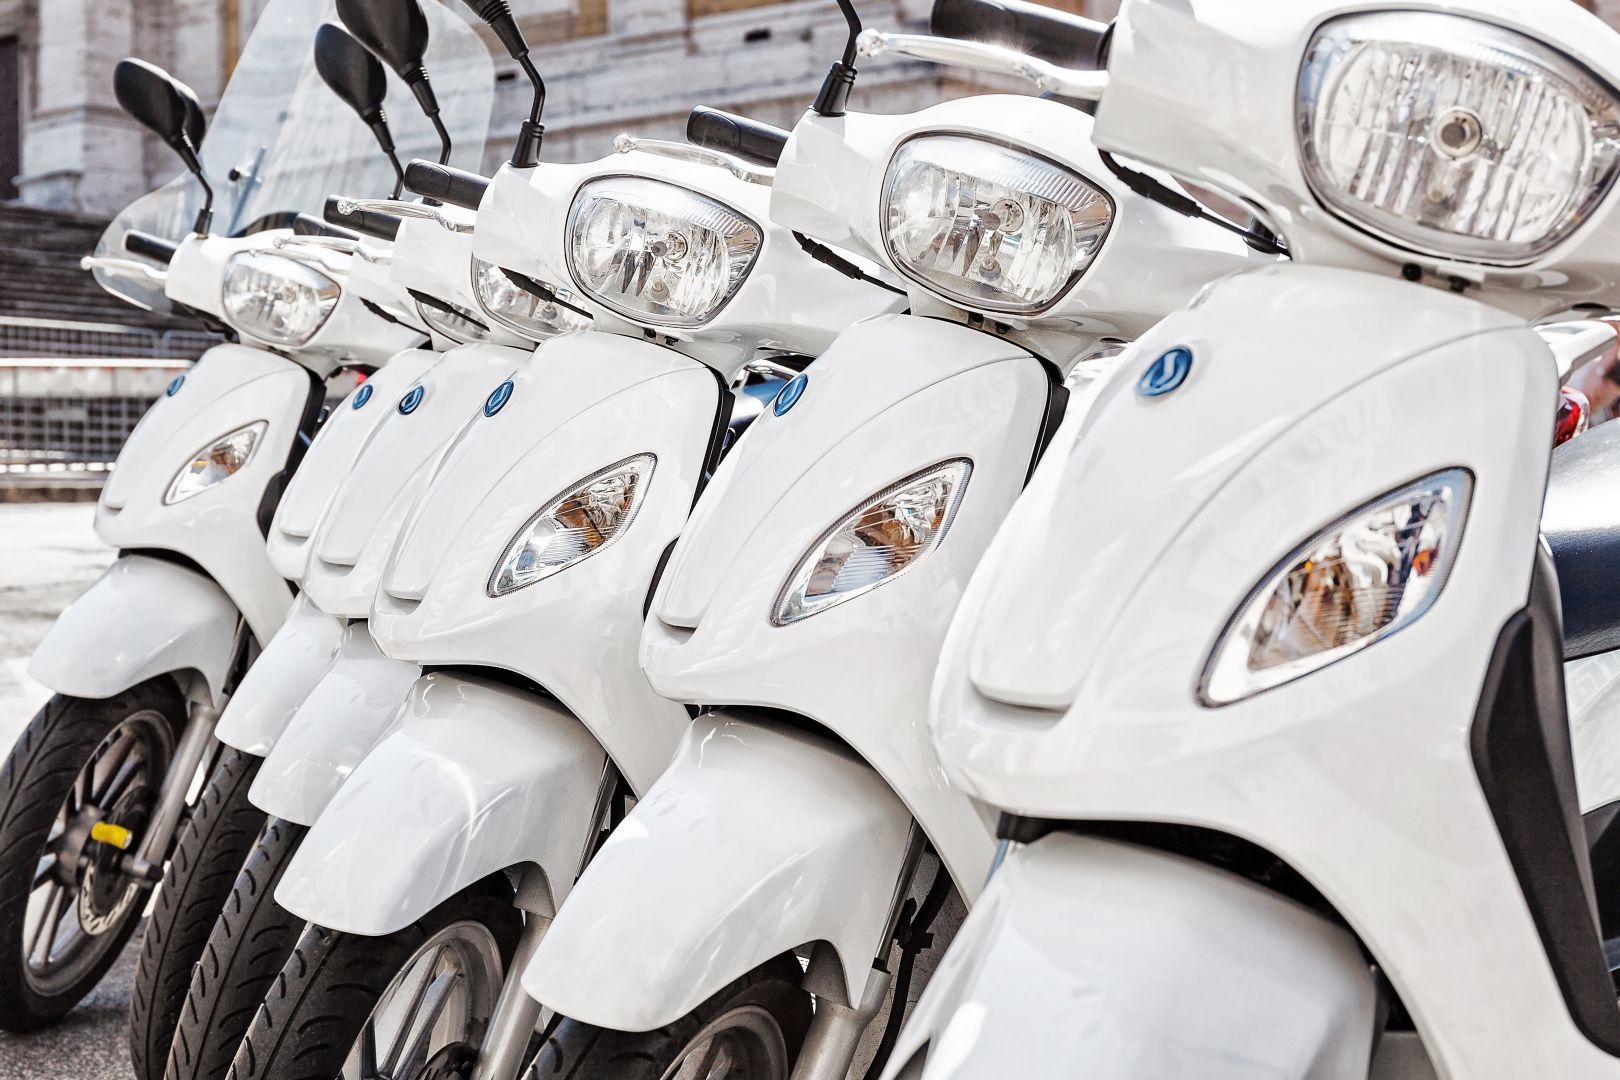 Zakázka na servis a opravy motocyklů (Motocykly, čtyřkolky) - Zlín